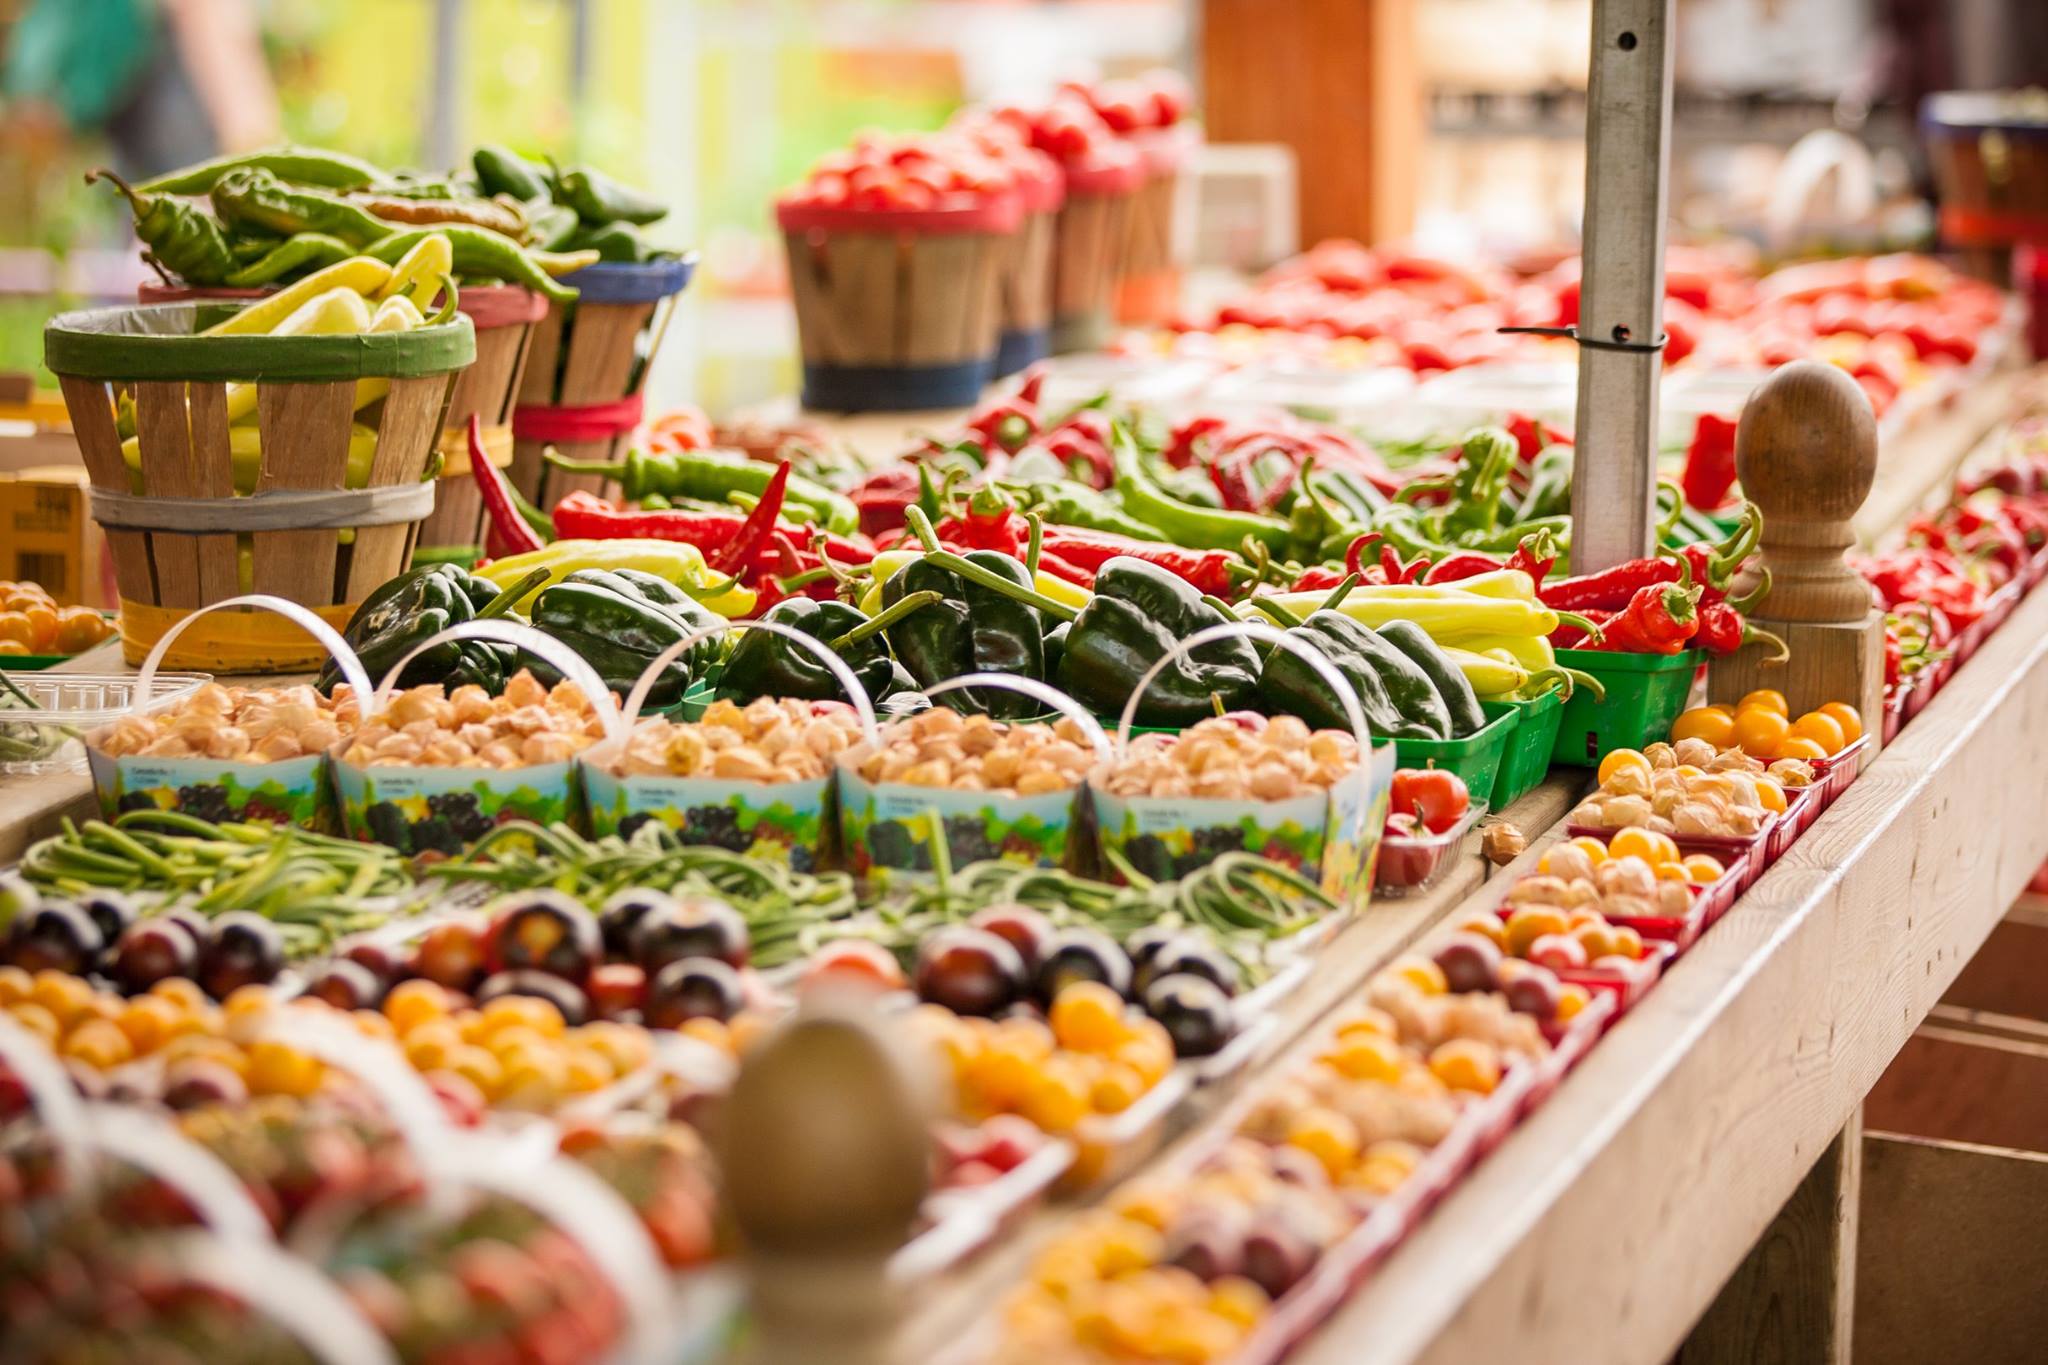 Résultats de recherche d'images pour « marché jean talon fruit et legume »